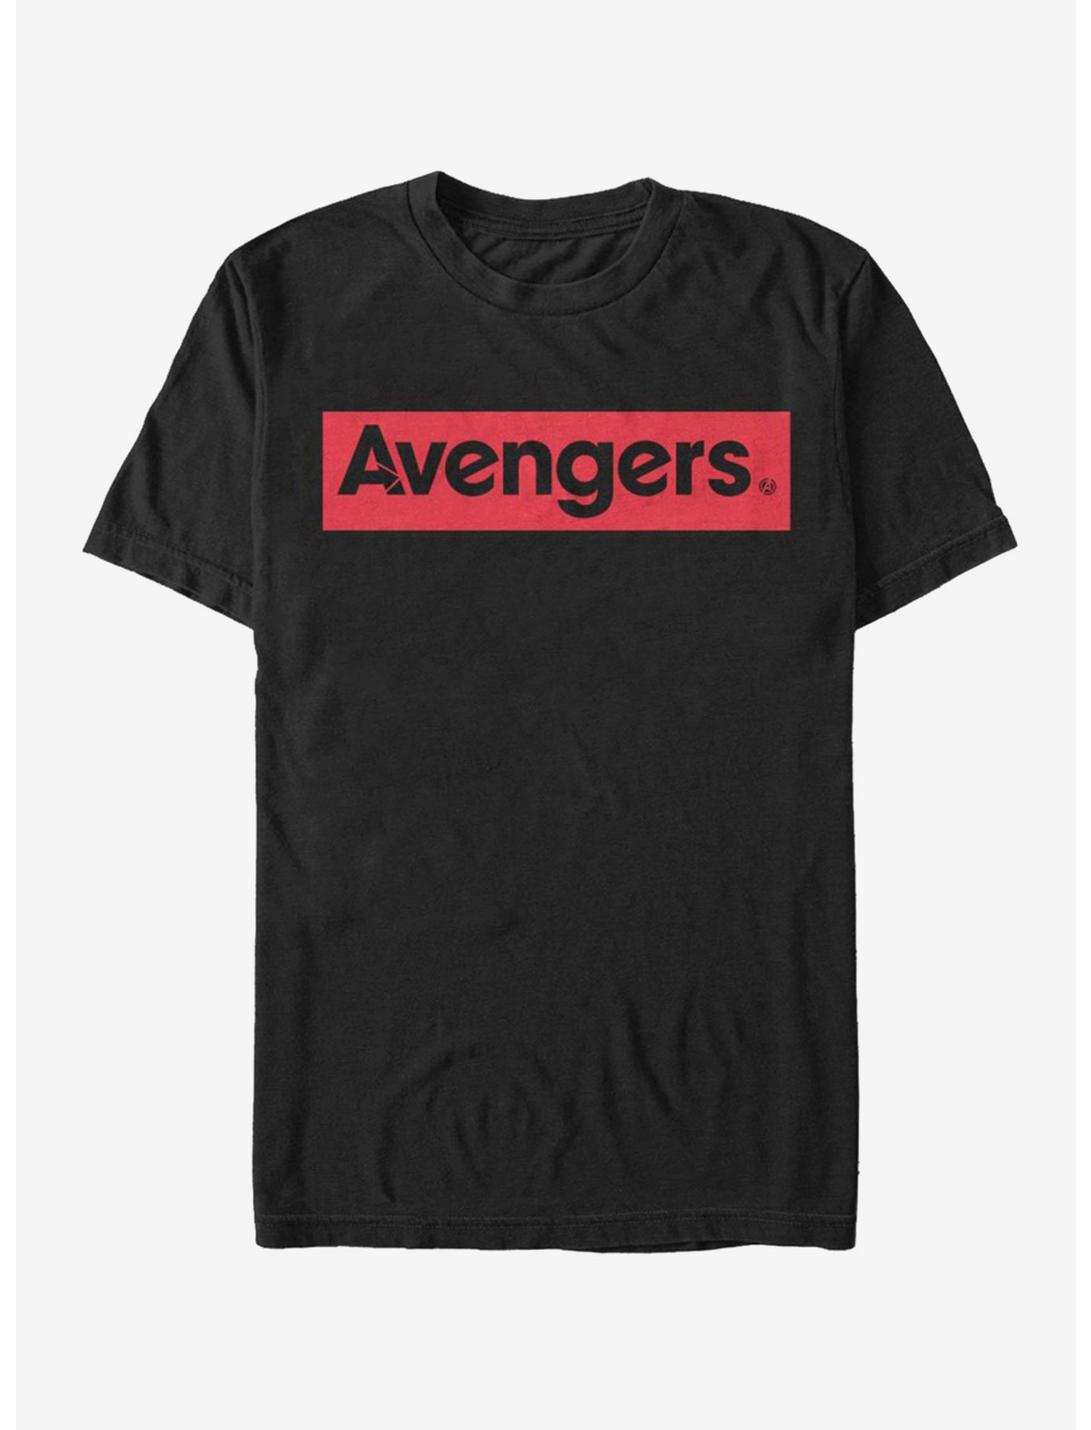 Marvel Avengers Endgame Avengers T-Shirt, BLACK, hi-res